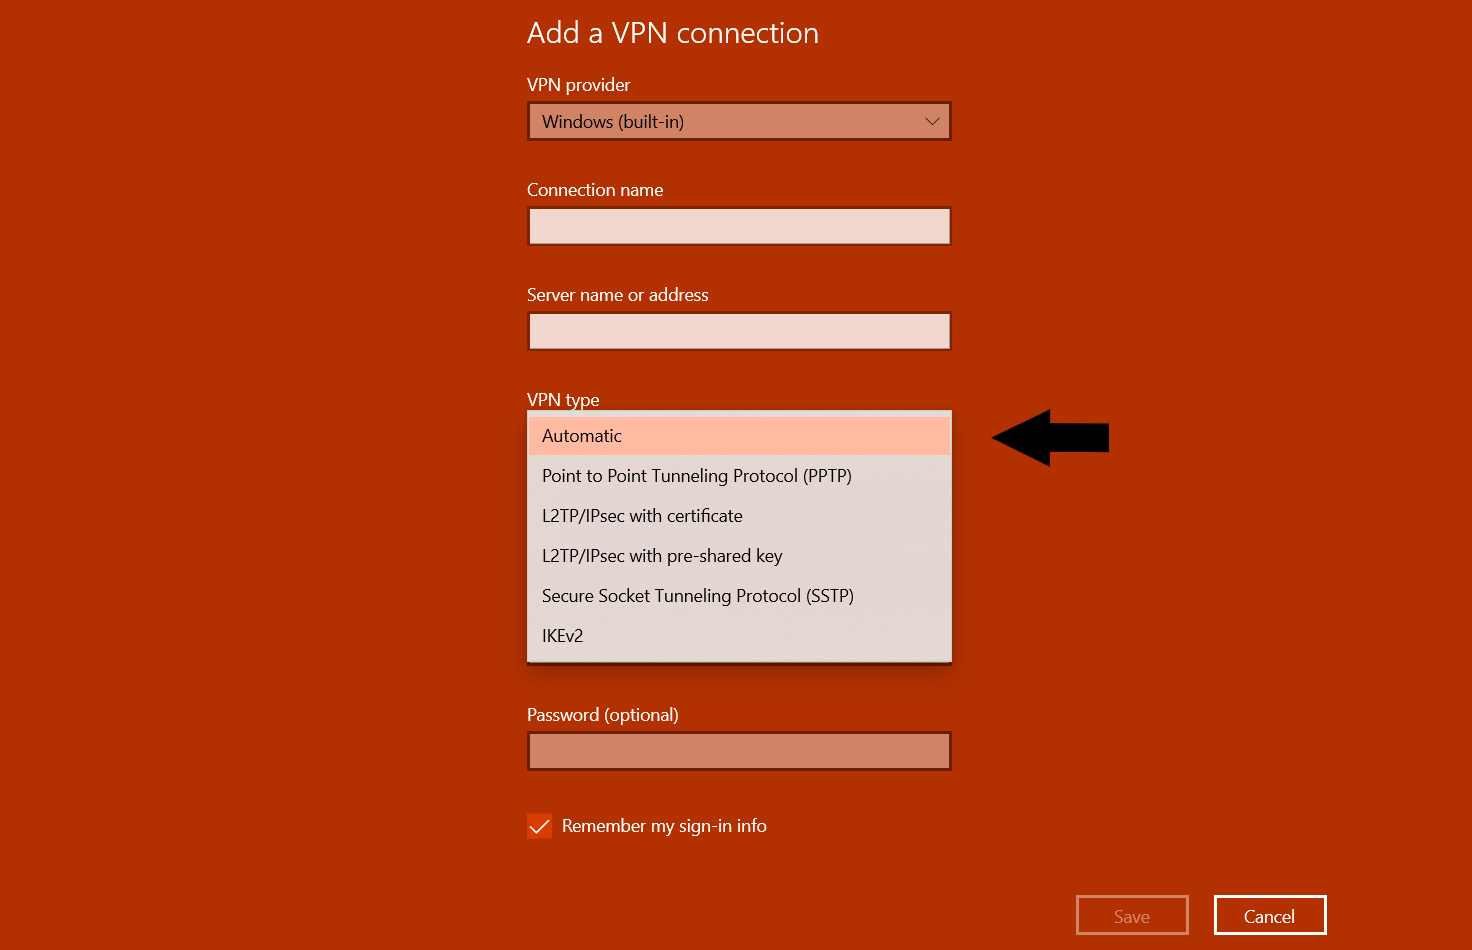 choosing the VPN type